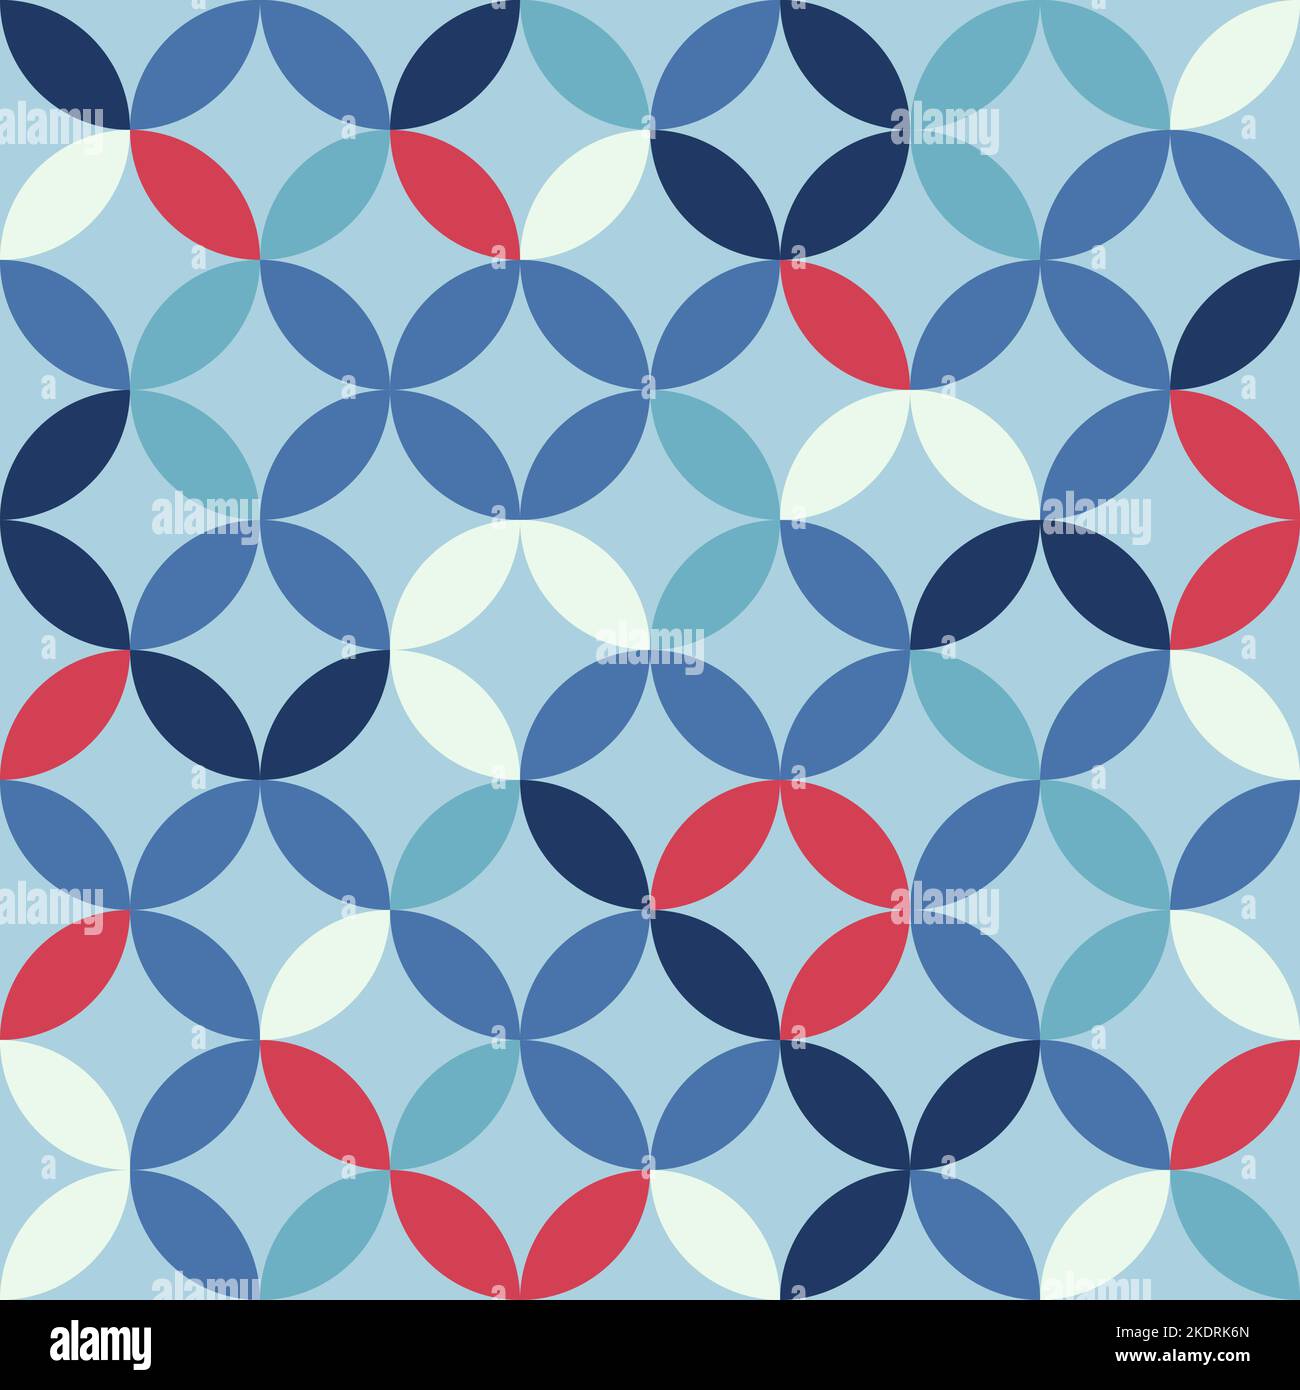 Blaues geometrisches Muster. Verbindende Kreise und Ovale abstrakte Retro-Mode-Textur. Nahtloses Muster. Blau und rot. Stock Vektor